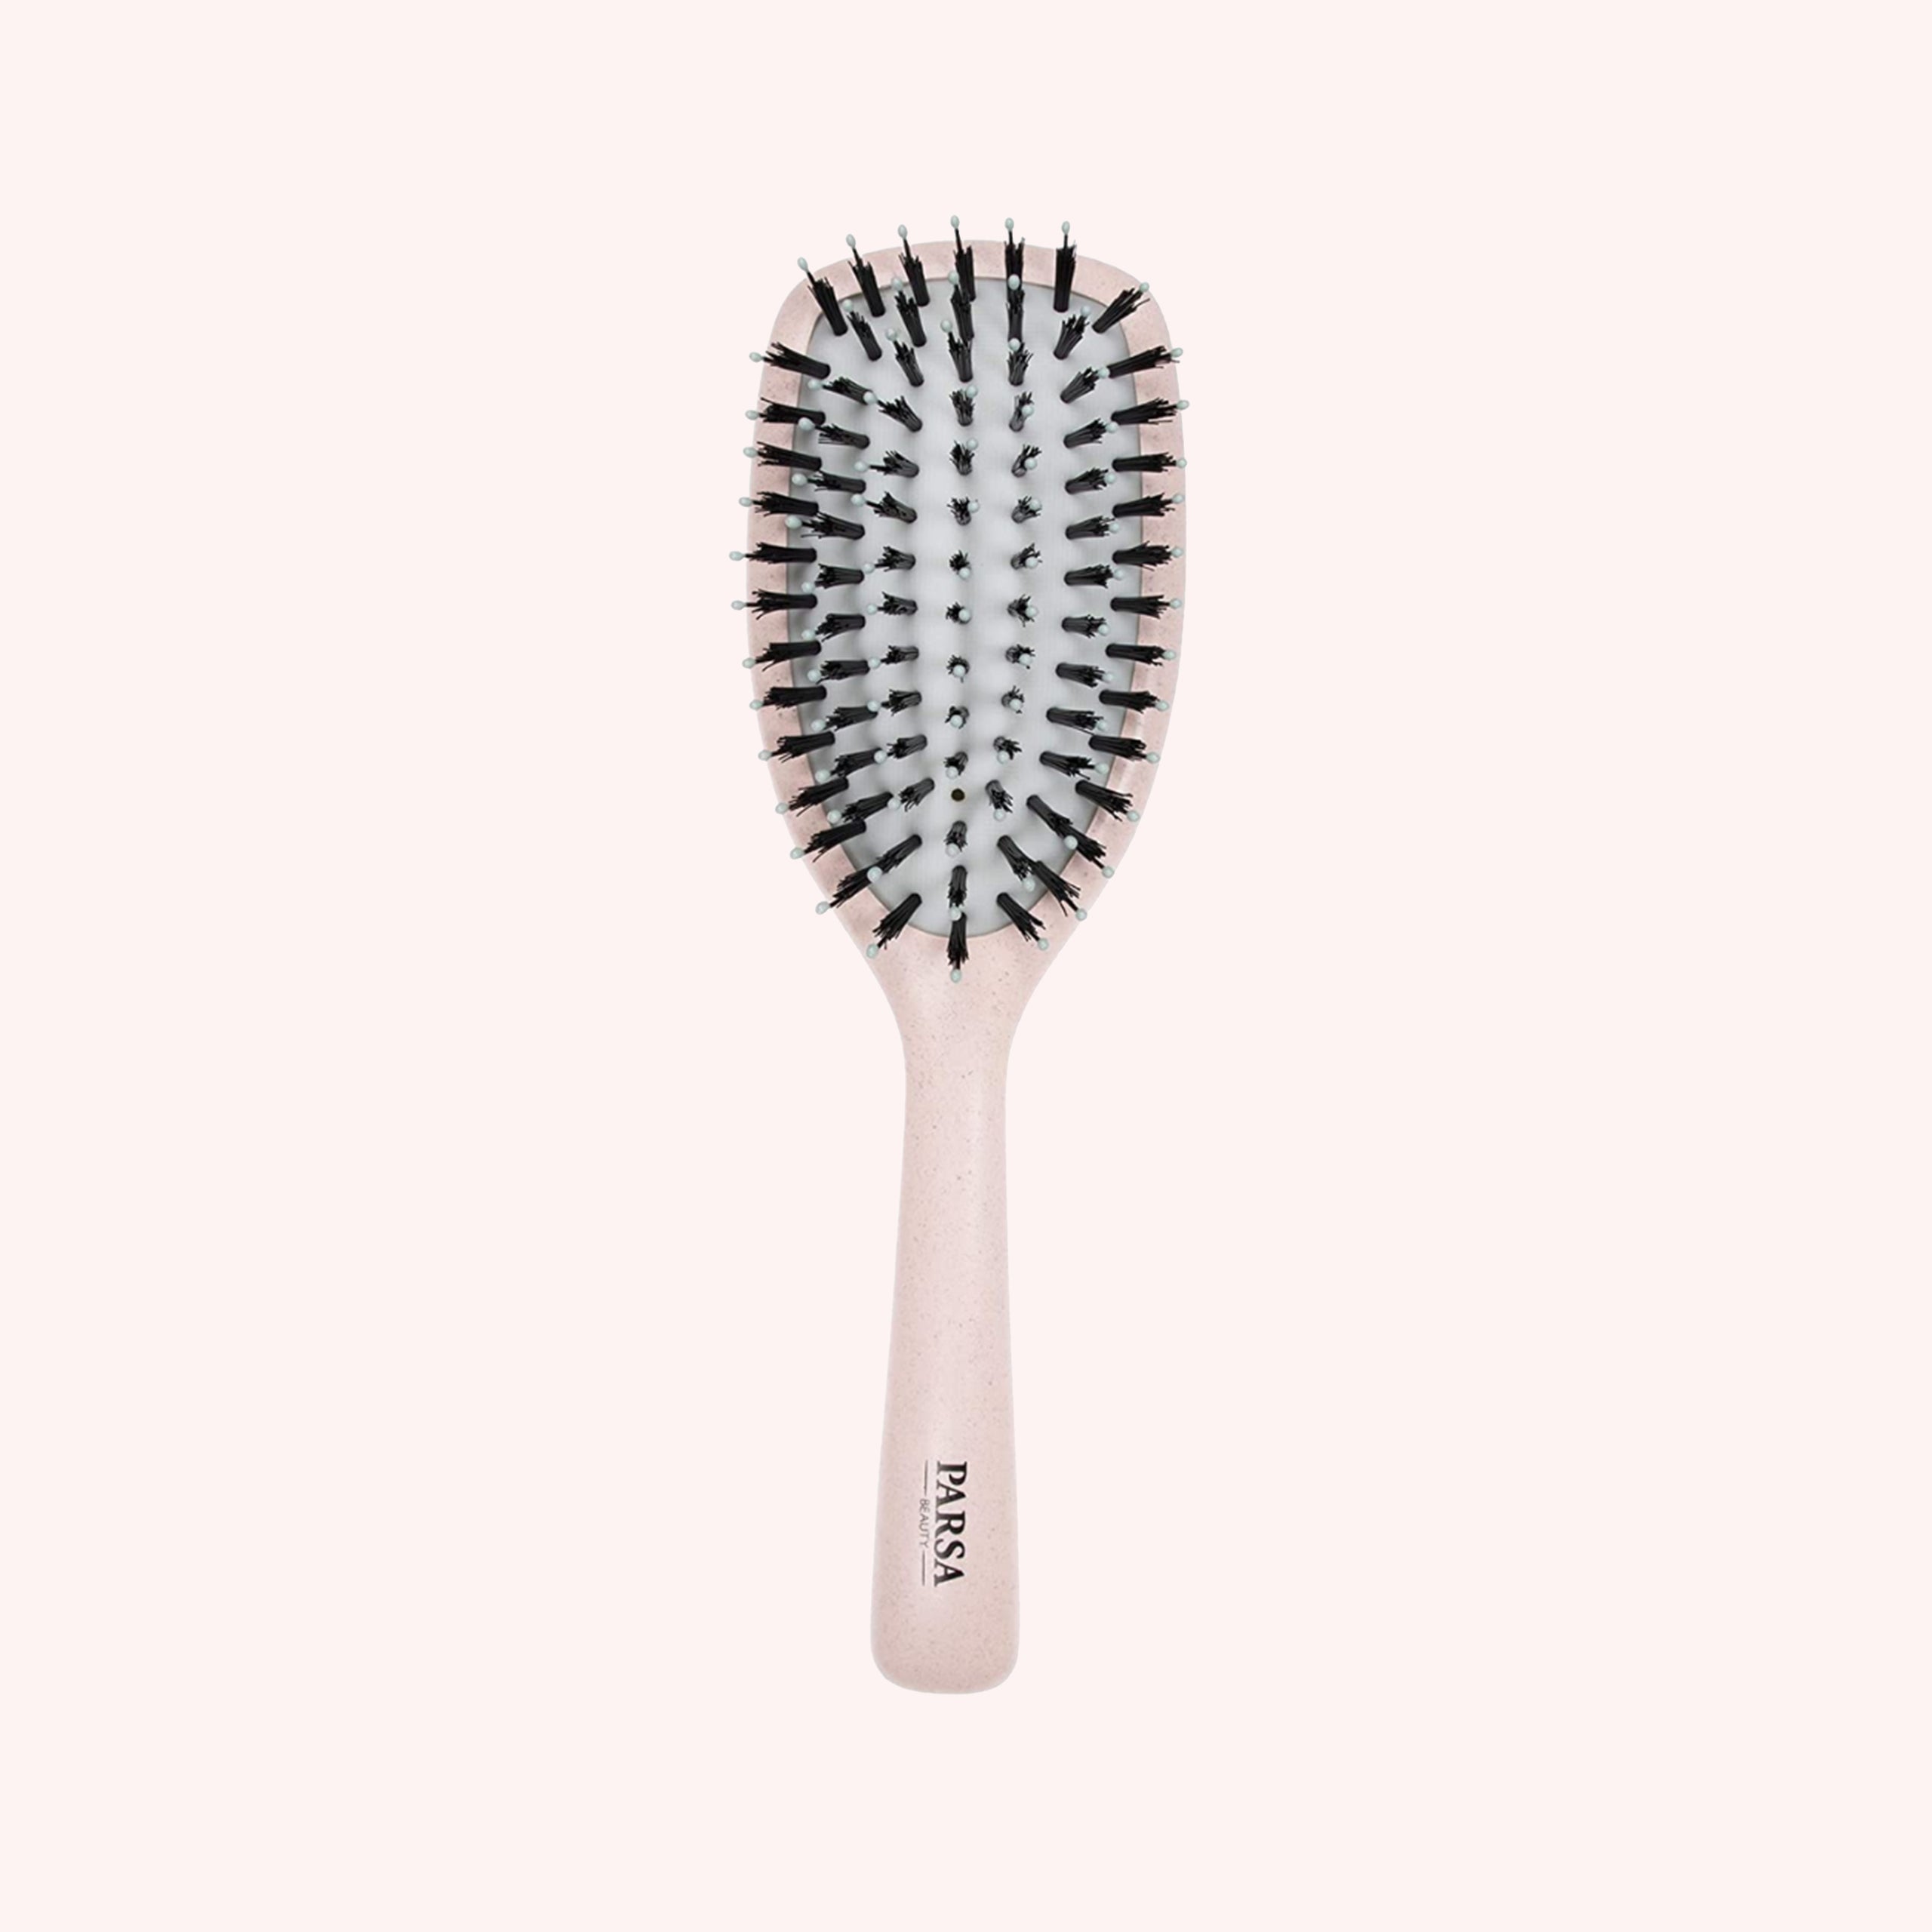 Sugarcane Paddle Hair Brush